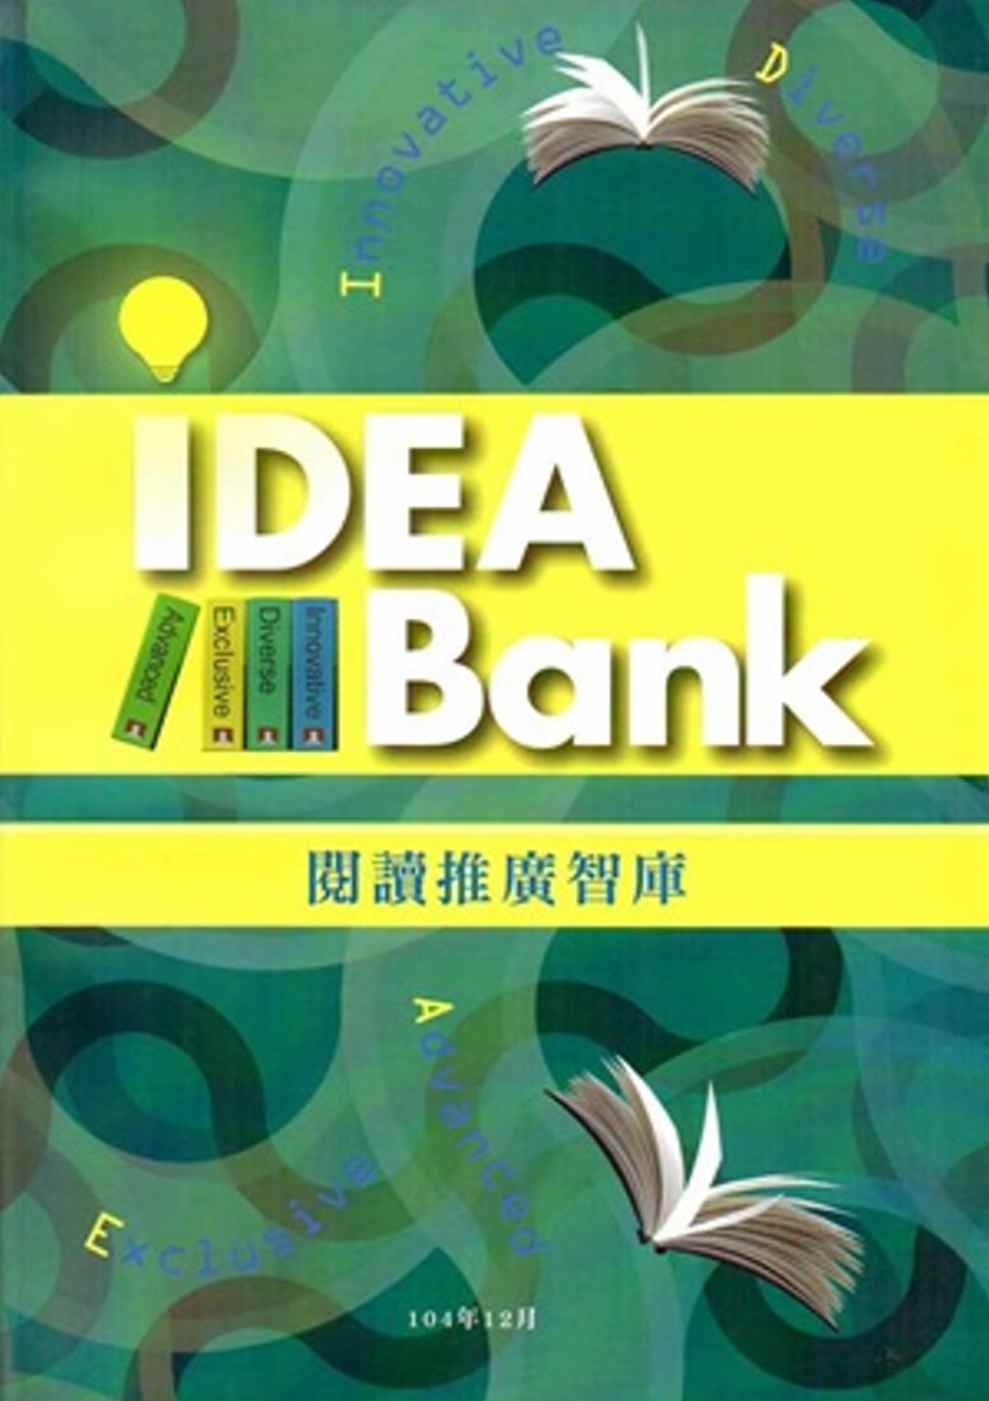 閱讀推廣智庫(Idea Bank)